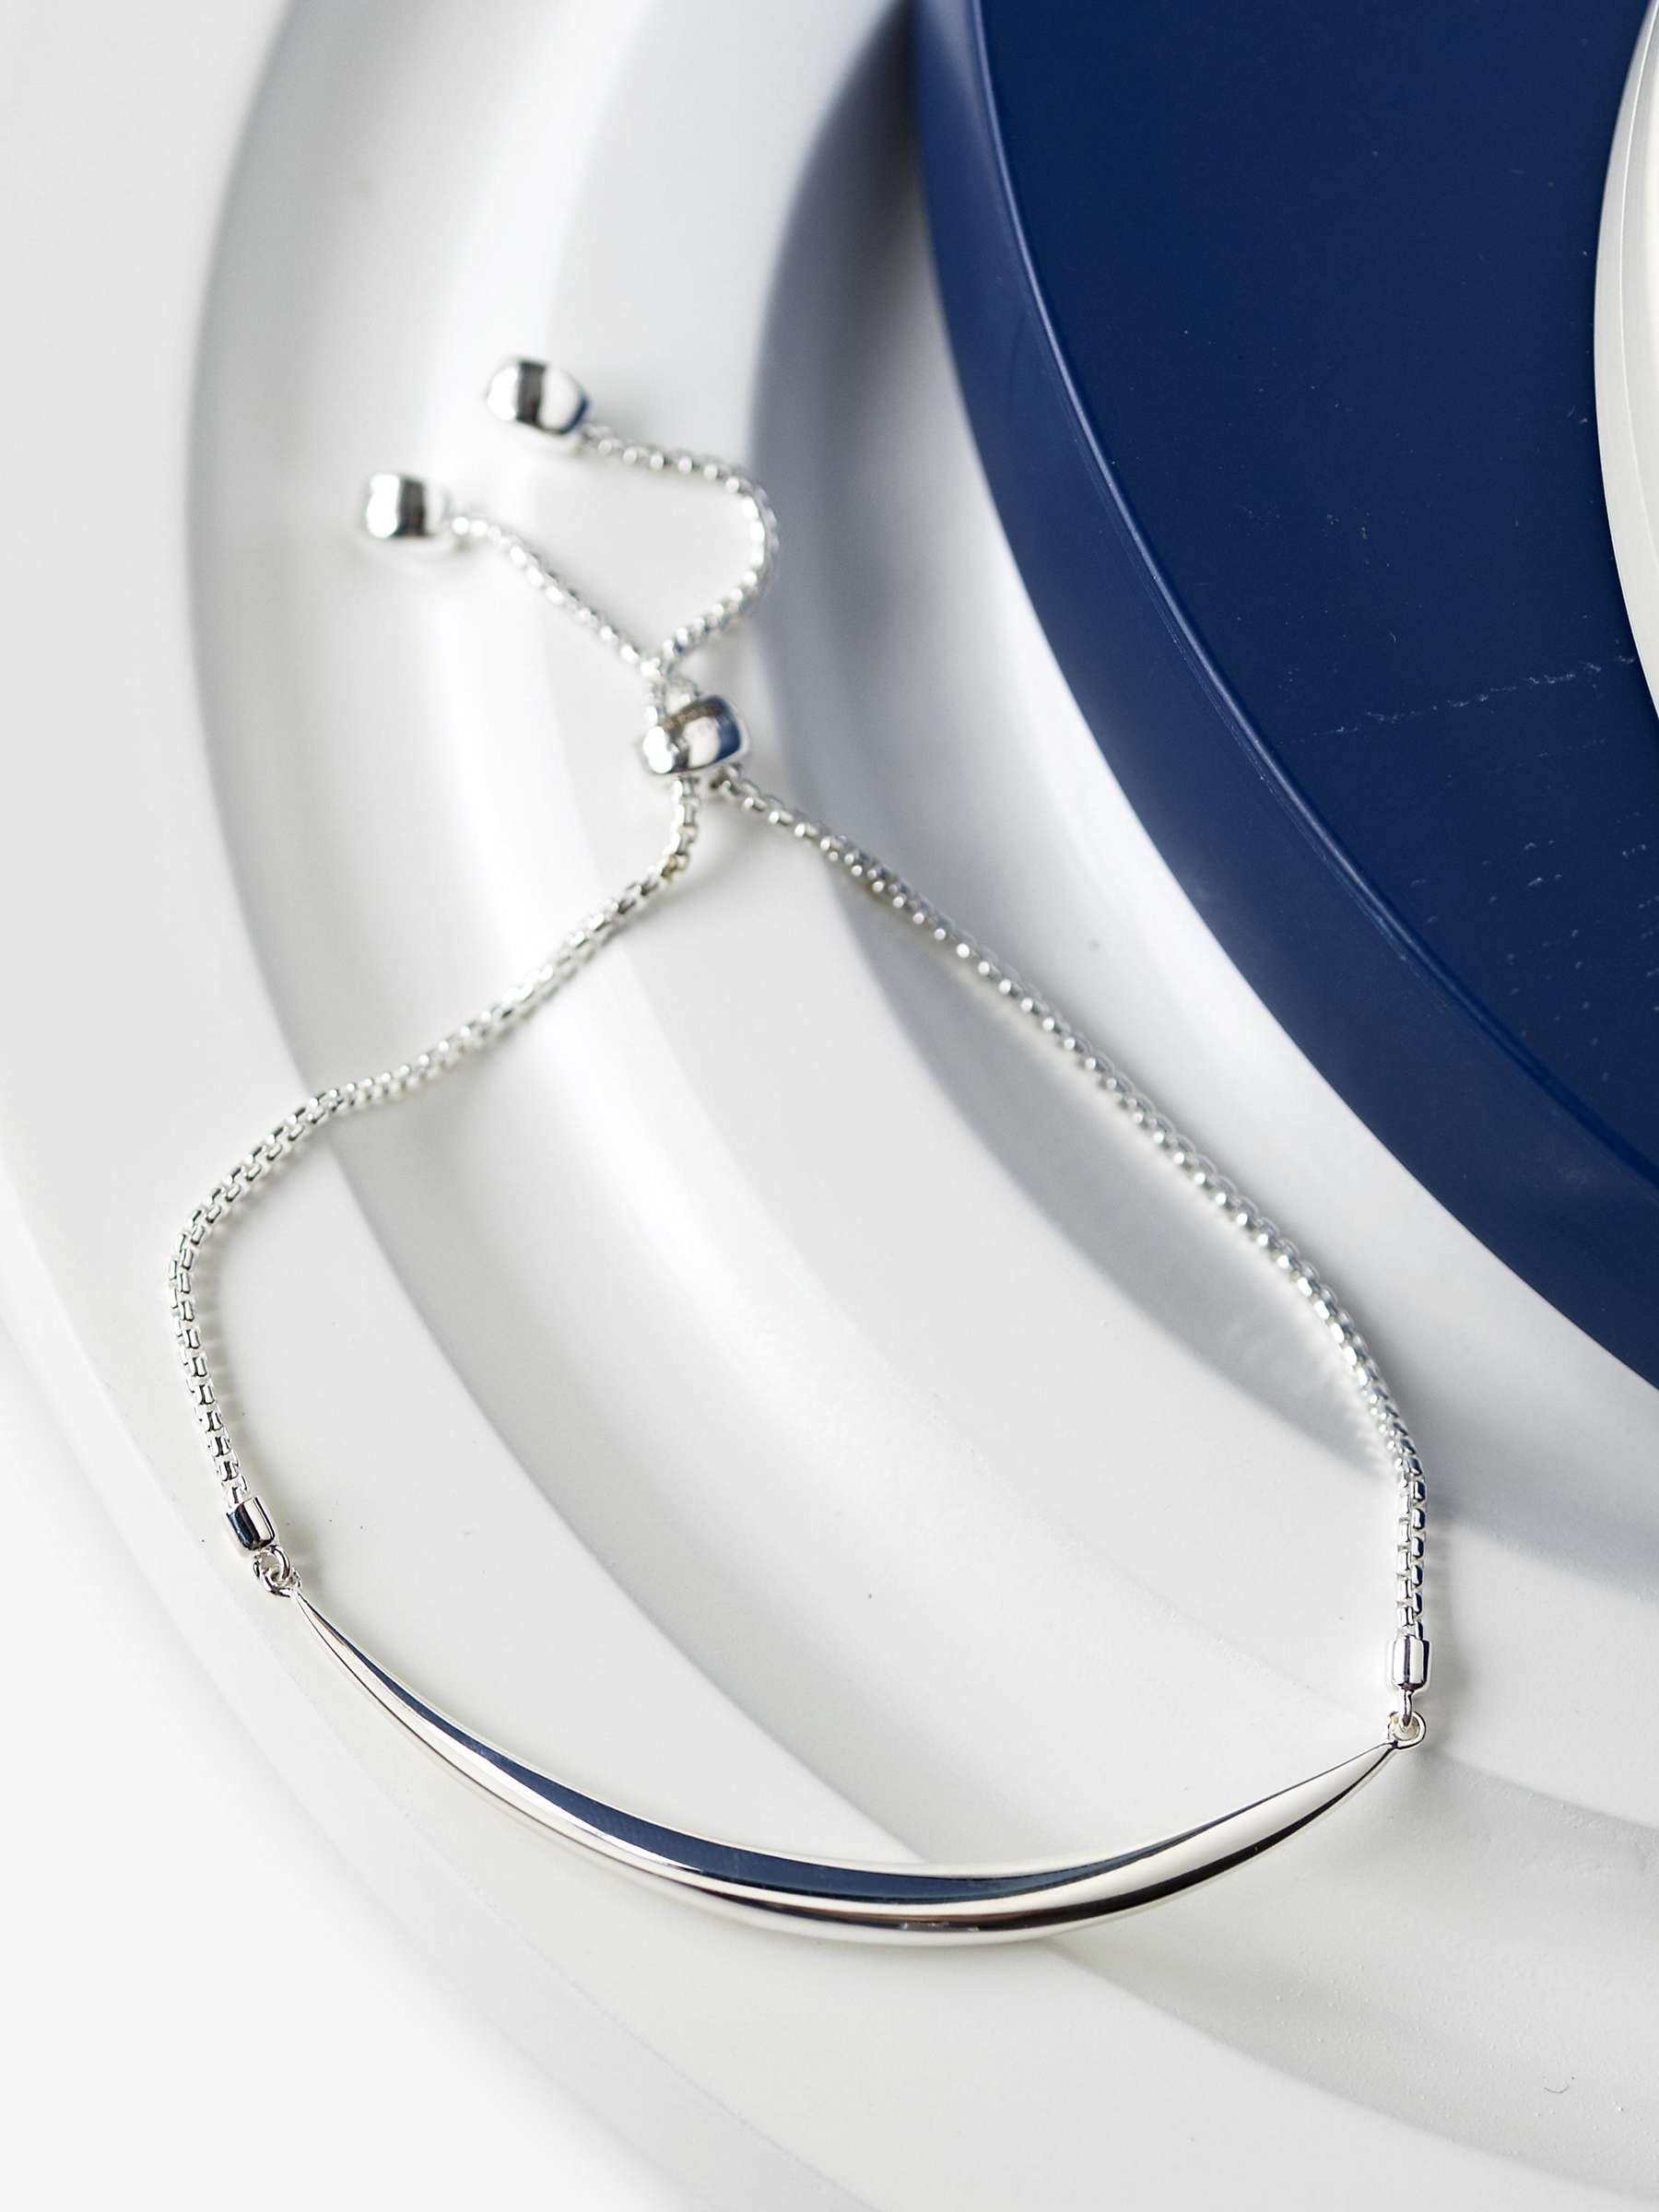 Buy Kit Heath Bevel Curve Bar Toggle Bracelet, Silver Online at johnlewis.com